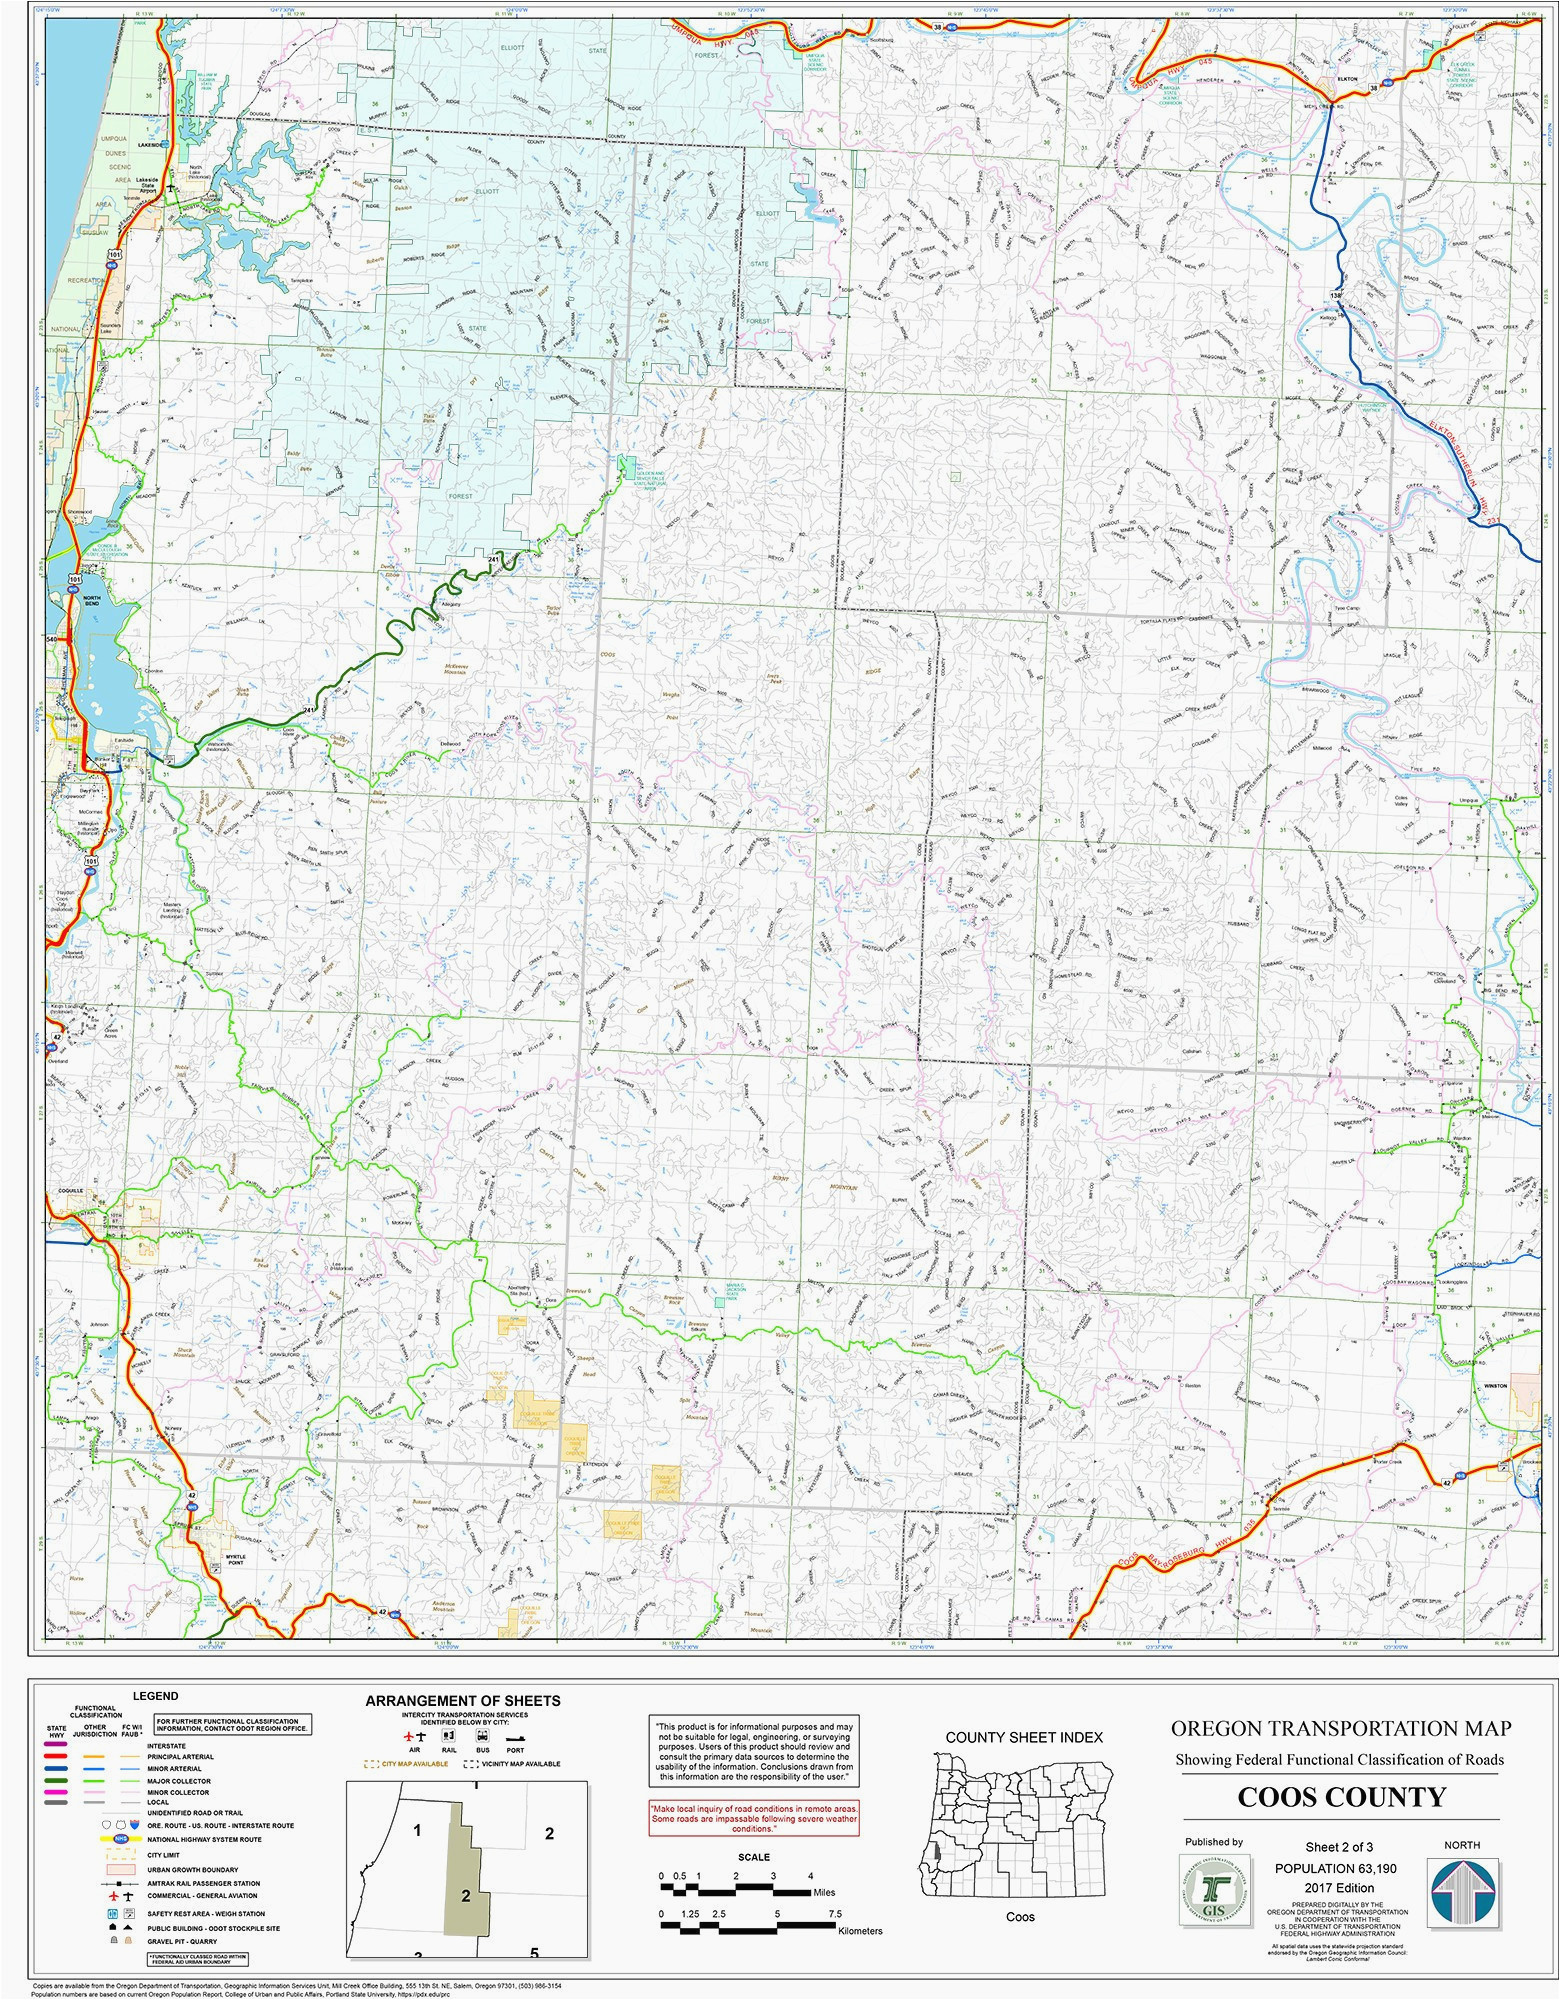 Map Of Groveport Ohio Google Maps Columbus Ohio Google Maps Cleveland Fresh Best United